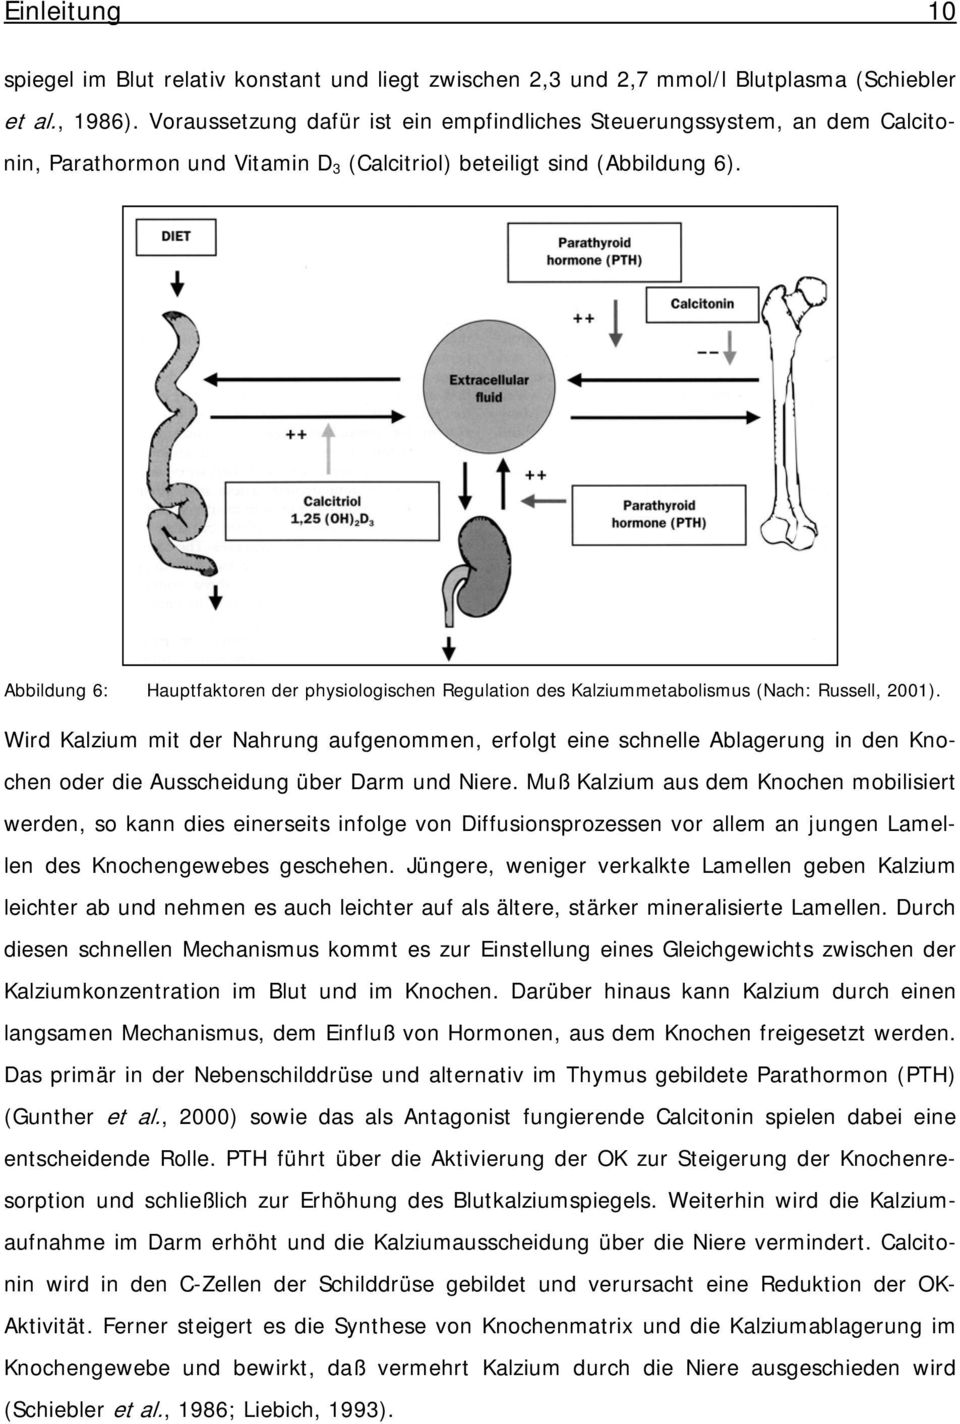 Abbildung 6: Hauptfaktoren der physiologischen Regulation des Kalziummetabolismus (Nach: Russell, 2001).